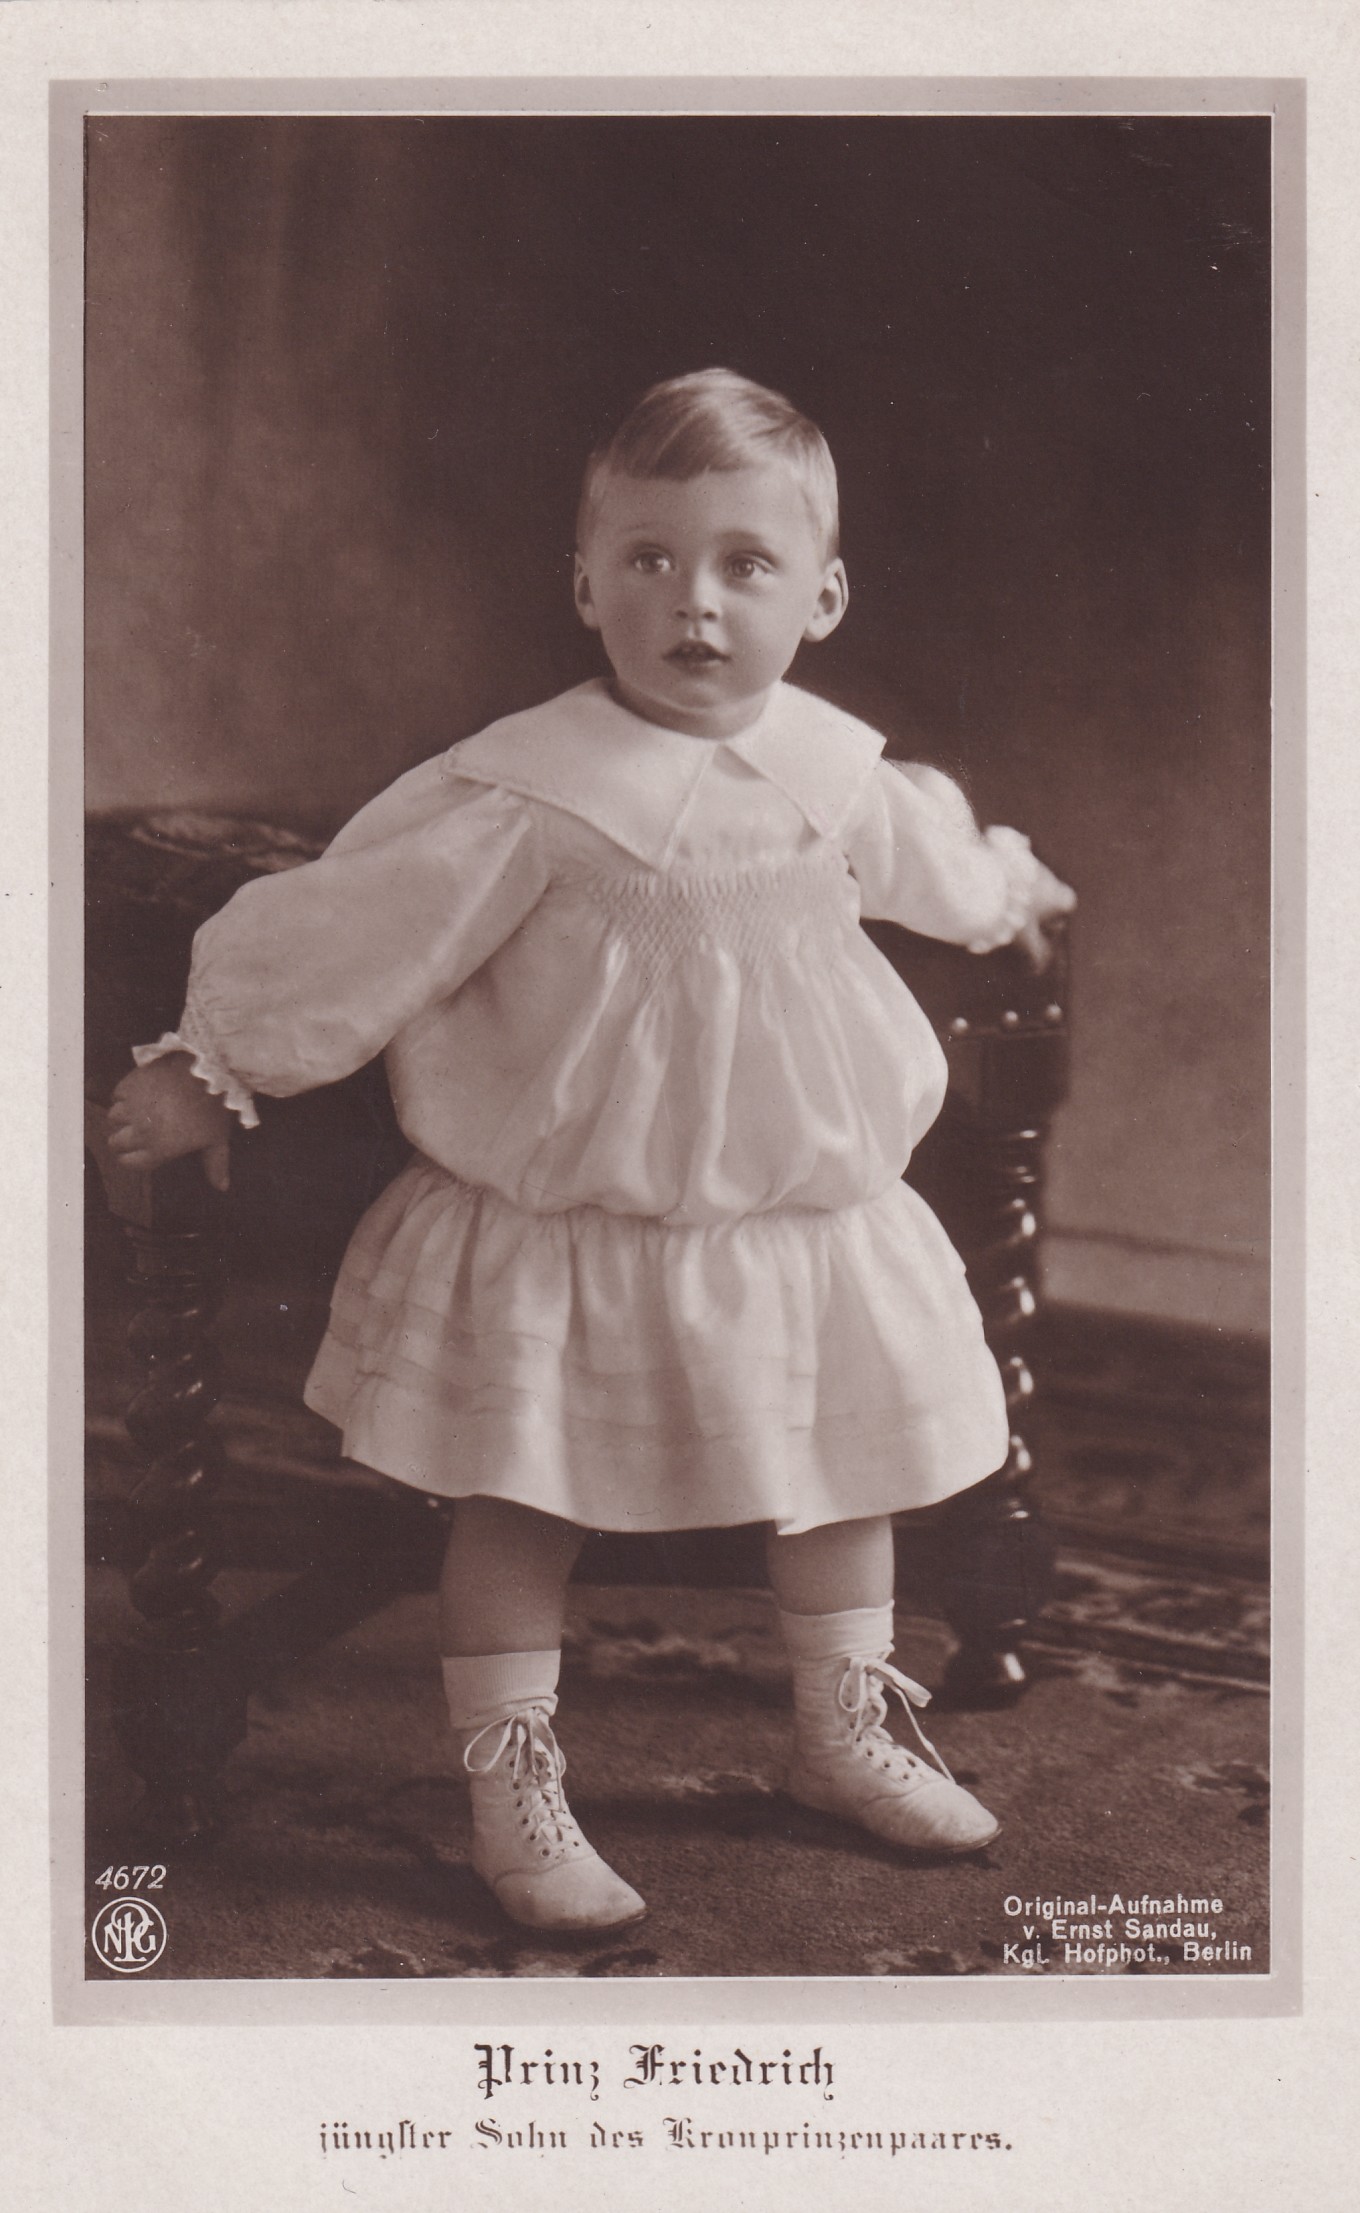 Bildpostkarte mit einem Kinderporträt des Prinzen Friedrich von Preußen (1911-1966), 1913 (Schloß Wernigerode GmbH RR-F)